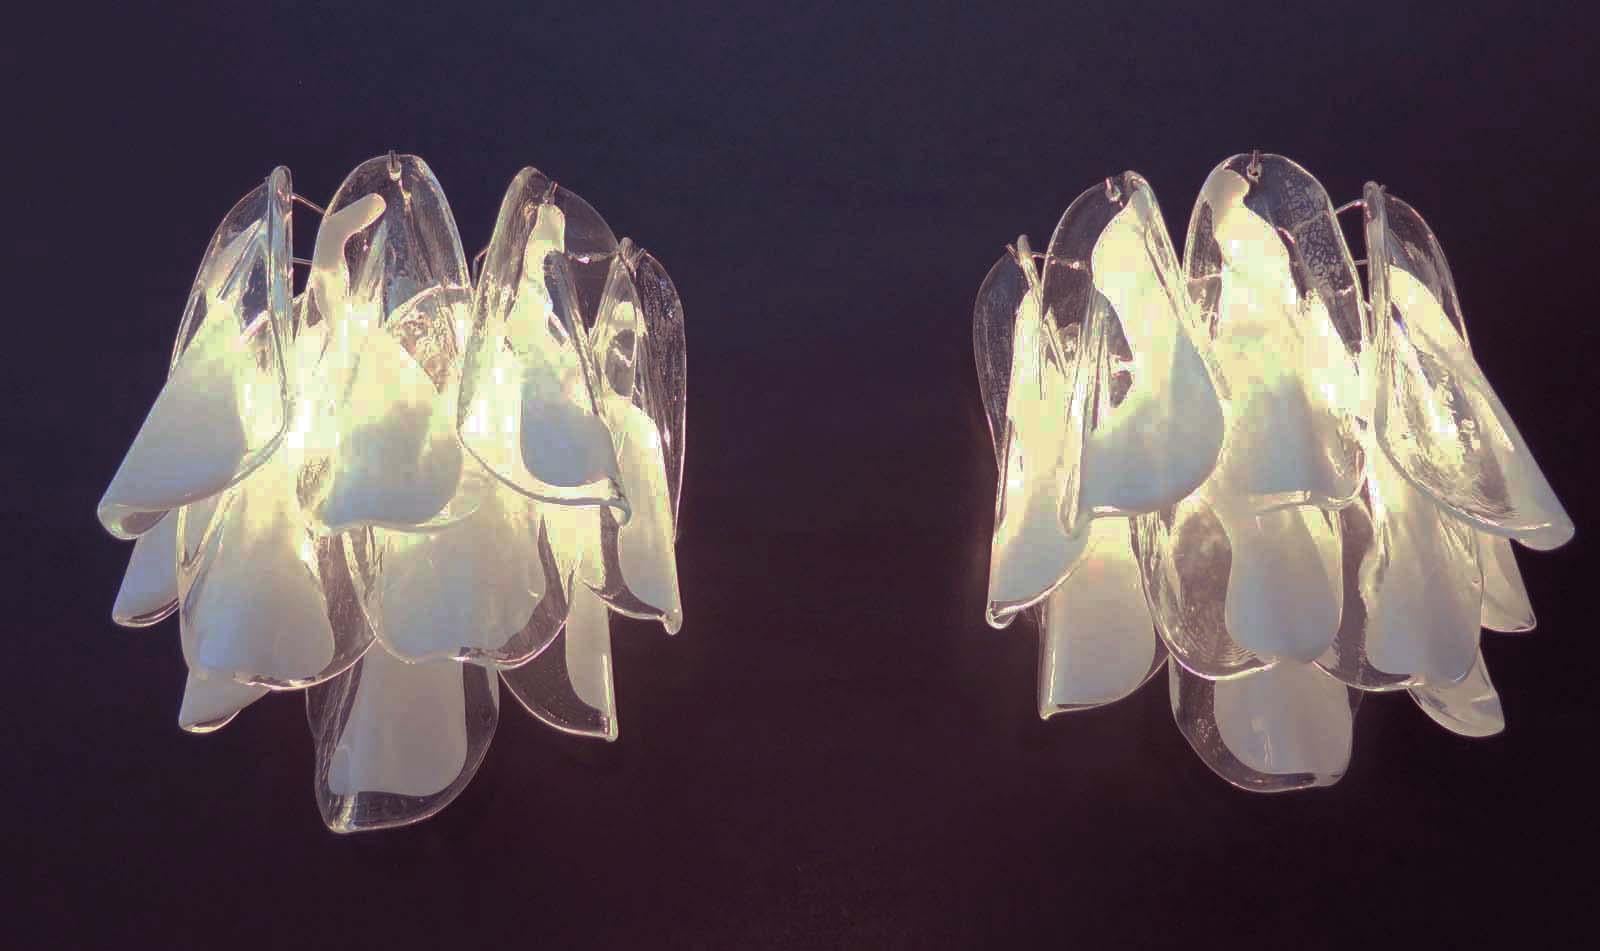 Ein Paar Vintage-Murano-Wandleuchter von 16 Multiocolr, Murano-Kristallprismen für jede Applikation in einem verchromten Metallrahmen. Die Form dieser Leuchte ist spiralförmig.
Periode: Ende des 20. Jahrhunderts
Abmessungen: 55 cm Höhe (21,65